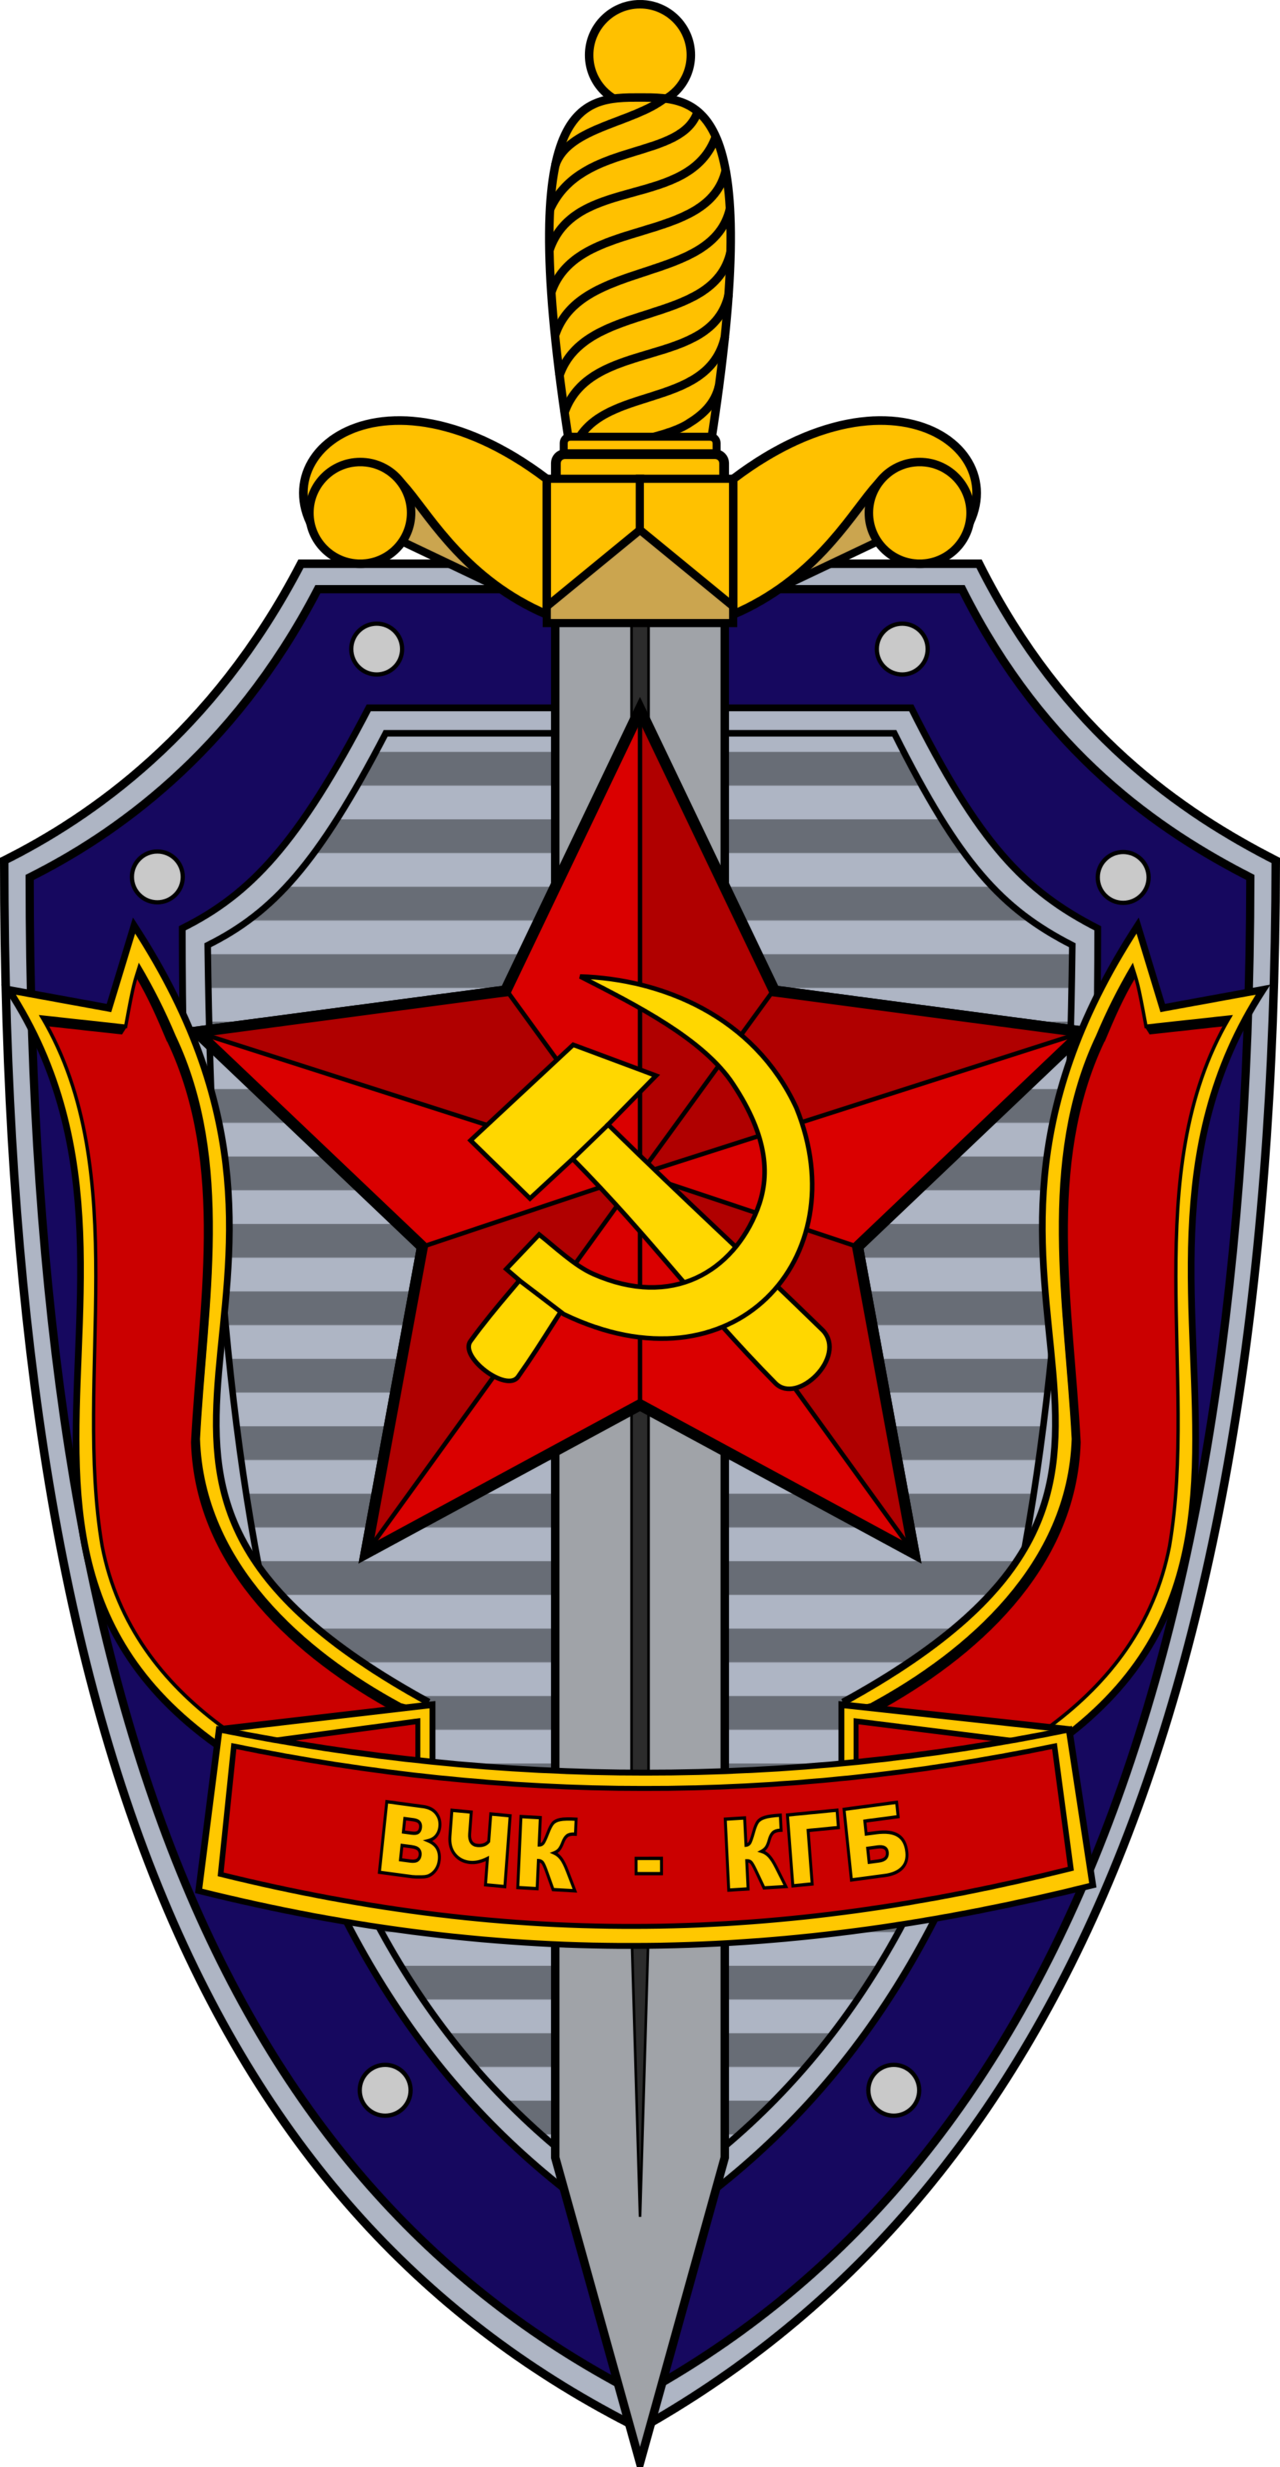 kgb_logo_by_communismarchive-d9popta.png